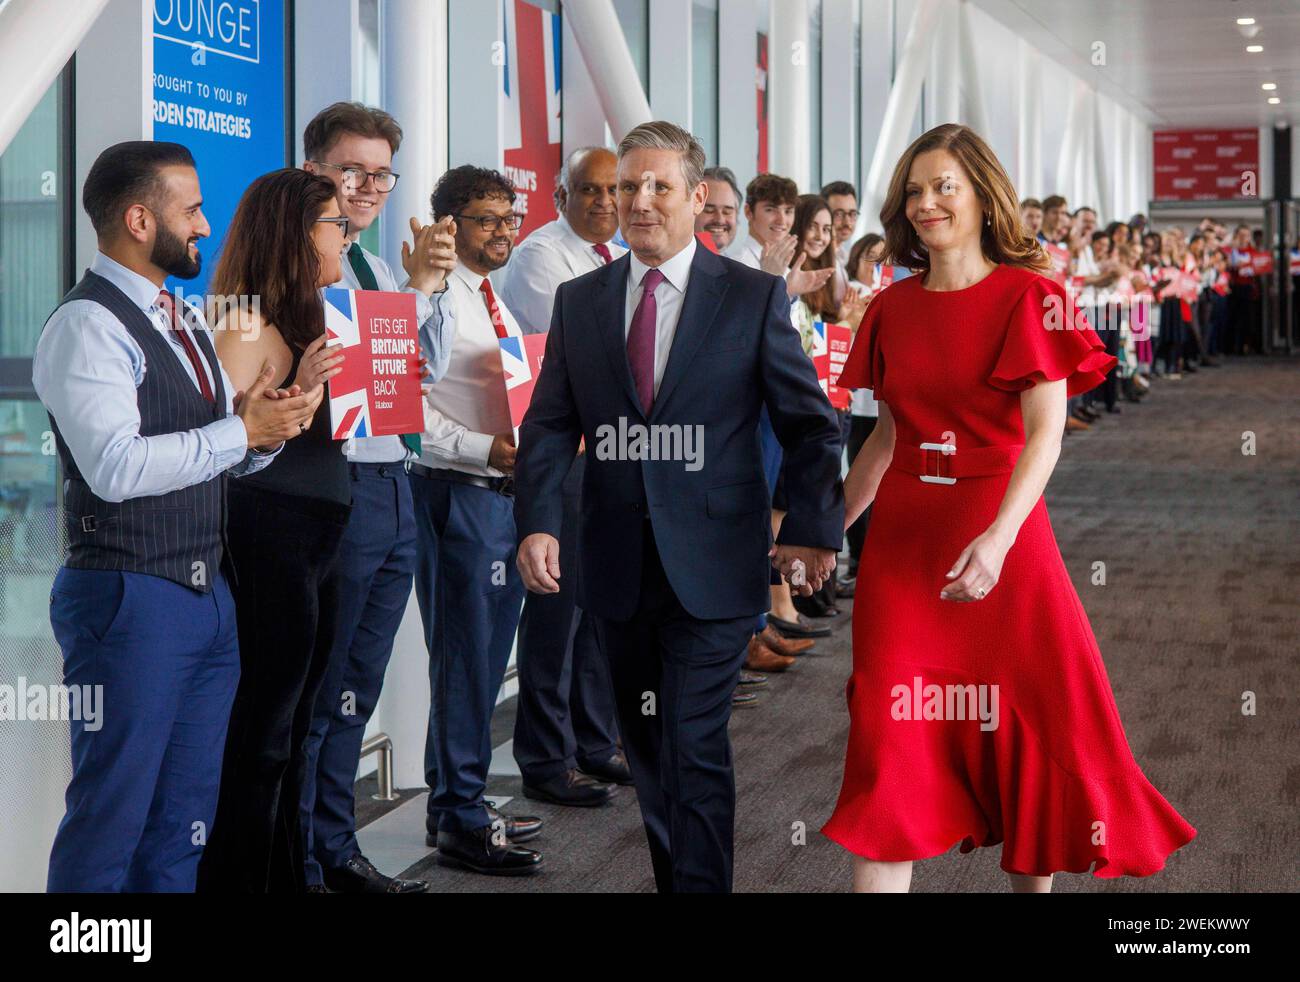 Il leader laburista, Sir Keir Starmer cammina con sua moglie, Lady Victoria Starmer, sulla strada per tenere il discorso dei suoi leader alla Conferenza del Partito Laburista. Foto Stock